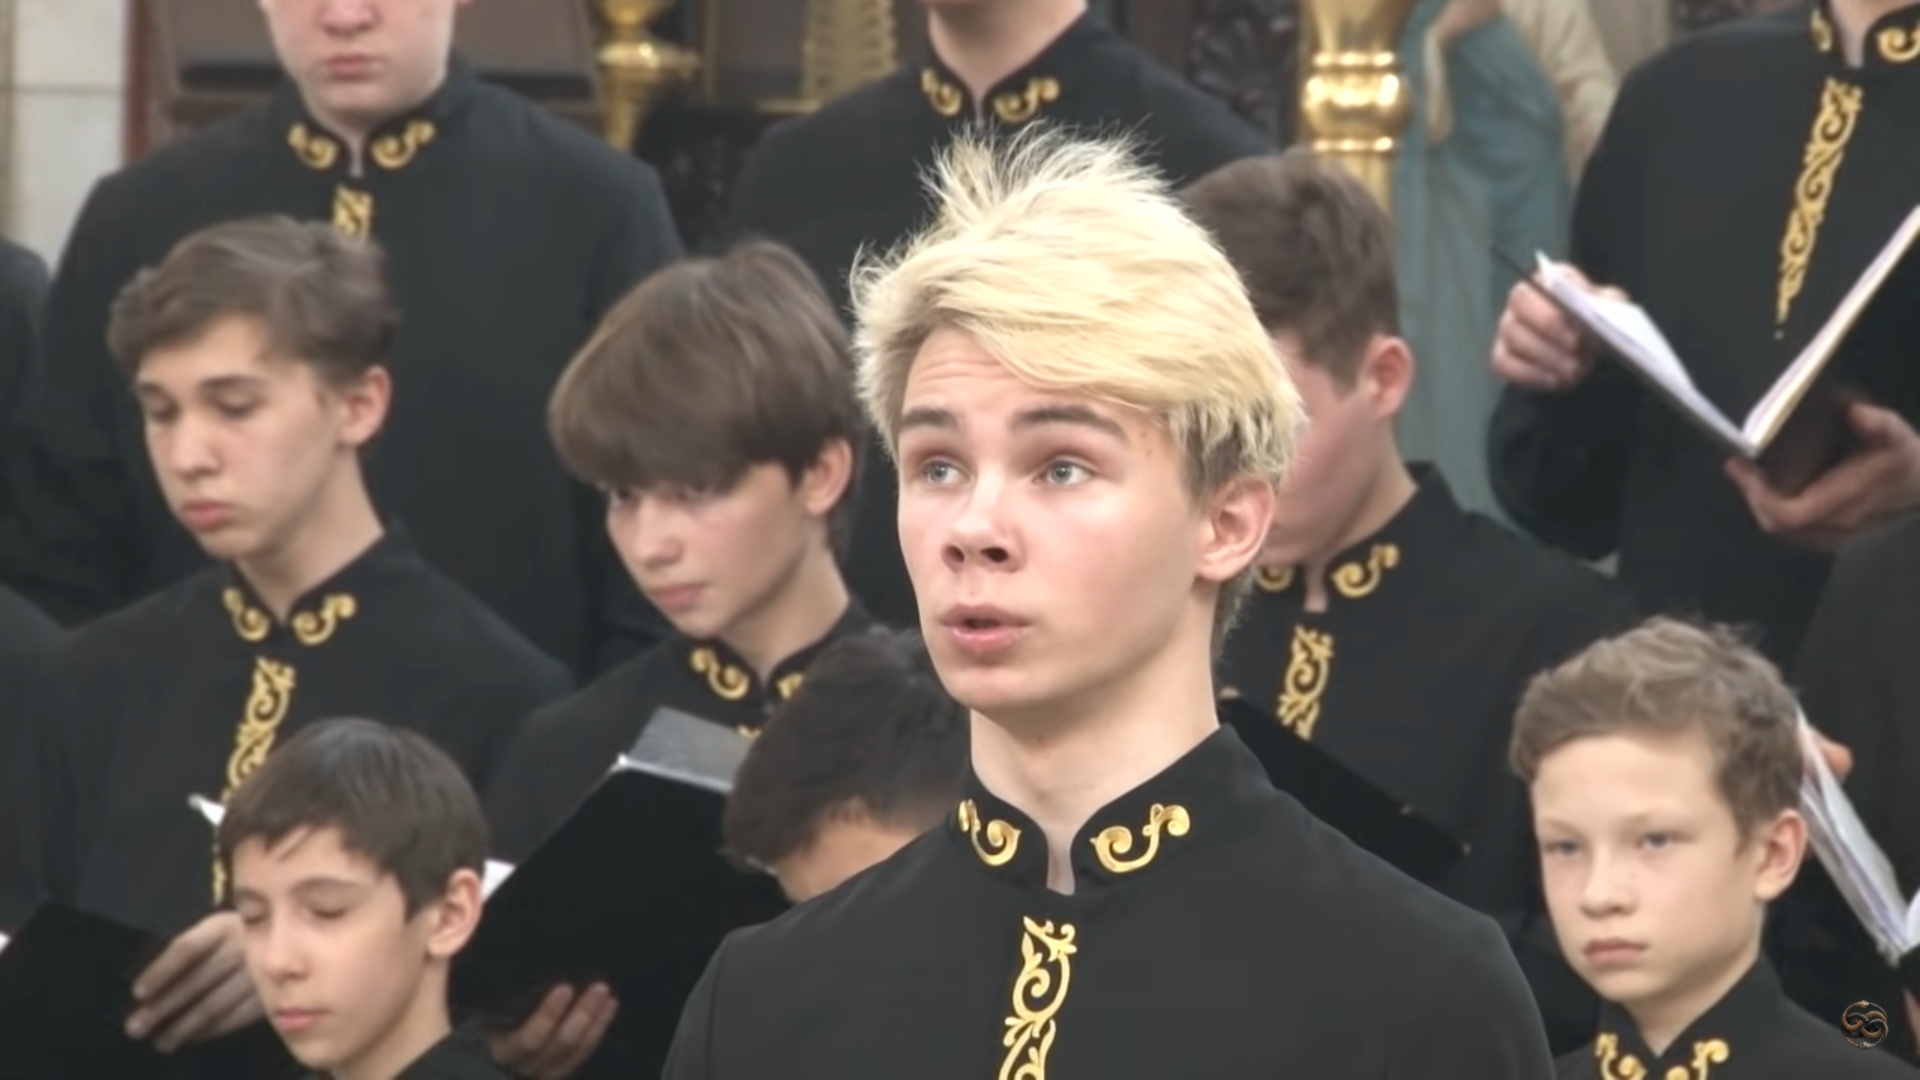 Видео с молодым певцом церковного хора из Рыбинска набрало больше 2 миллионов просмотров на YouTube